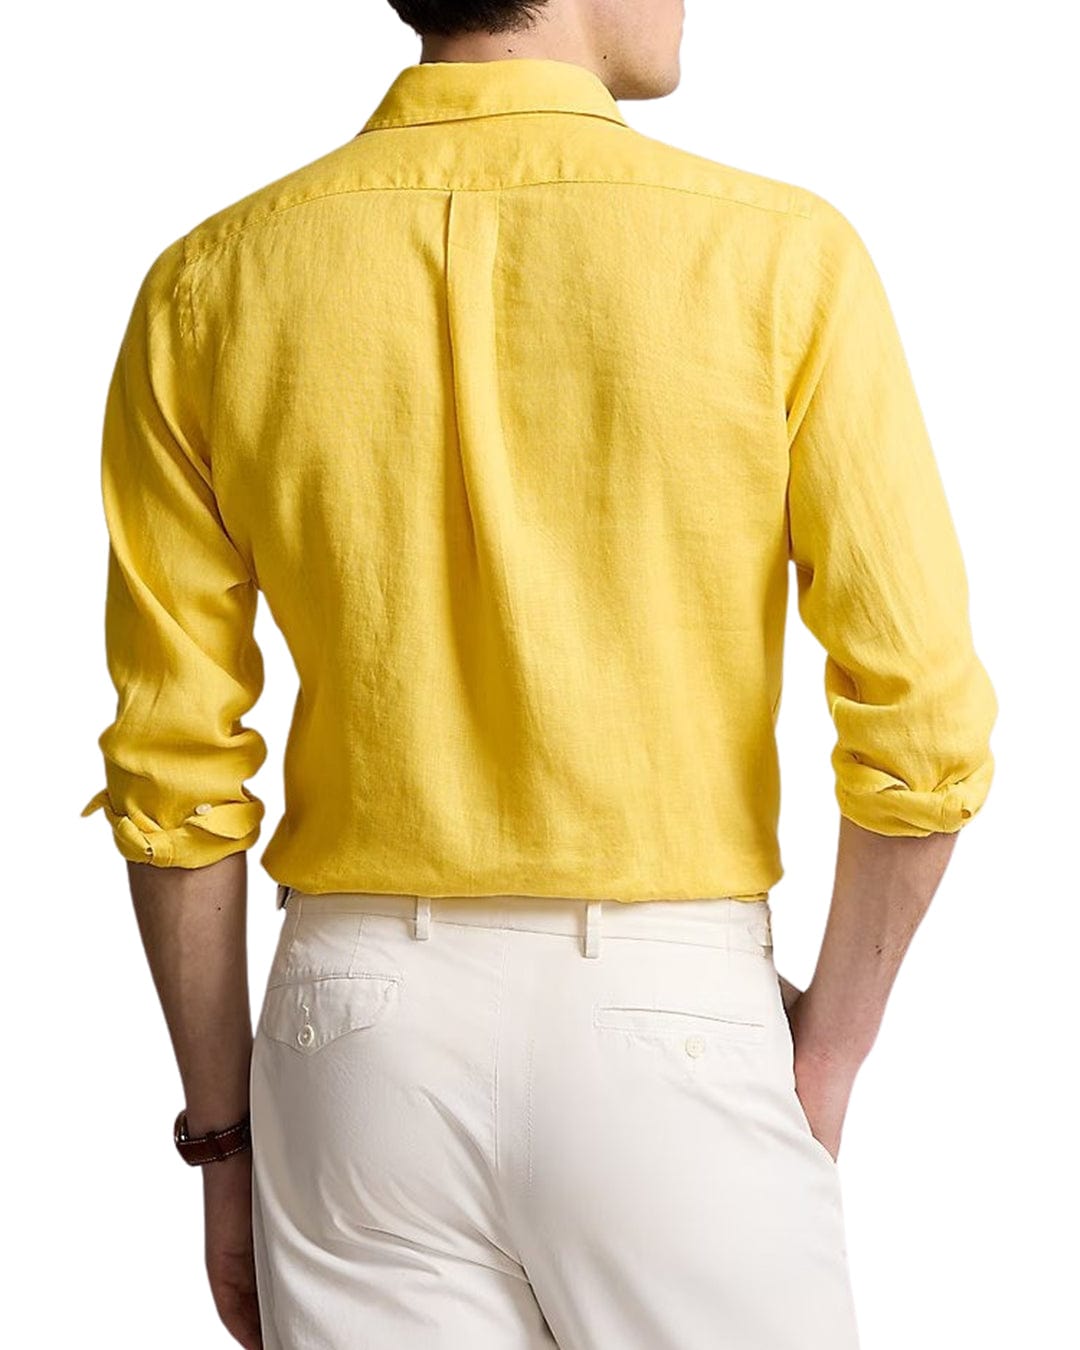 Polo Ralph Lauren Shirts Polo Ralph Lauren Yellow Custom Fit Linen Shirt